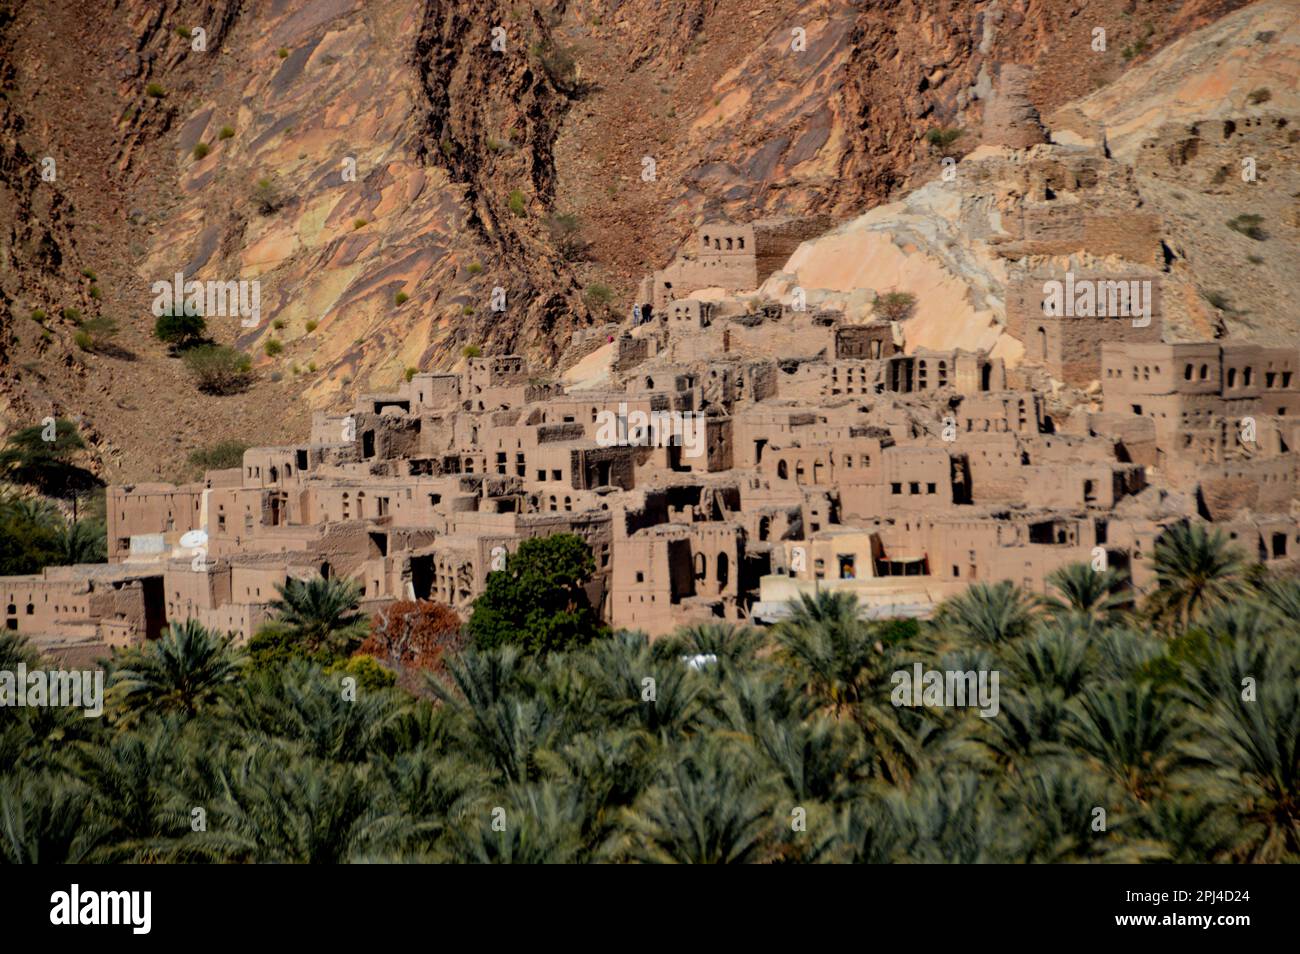 Oman, Birkat al Mawz: Ein Dorf mit verlassenen Backsteingebäuden am Fuße eines spektakulären Felsvorhangs, umgeben von einem Meer aus Dattelpalmen. Stockfoto